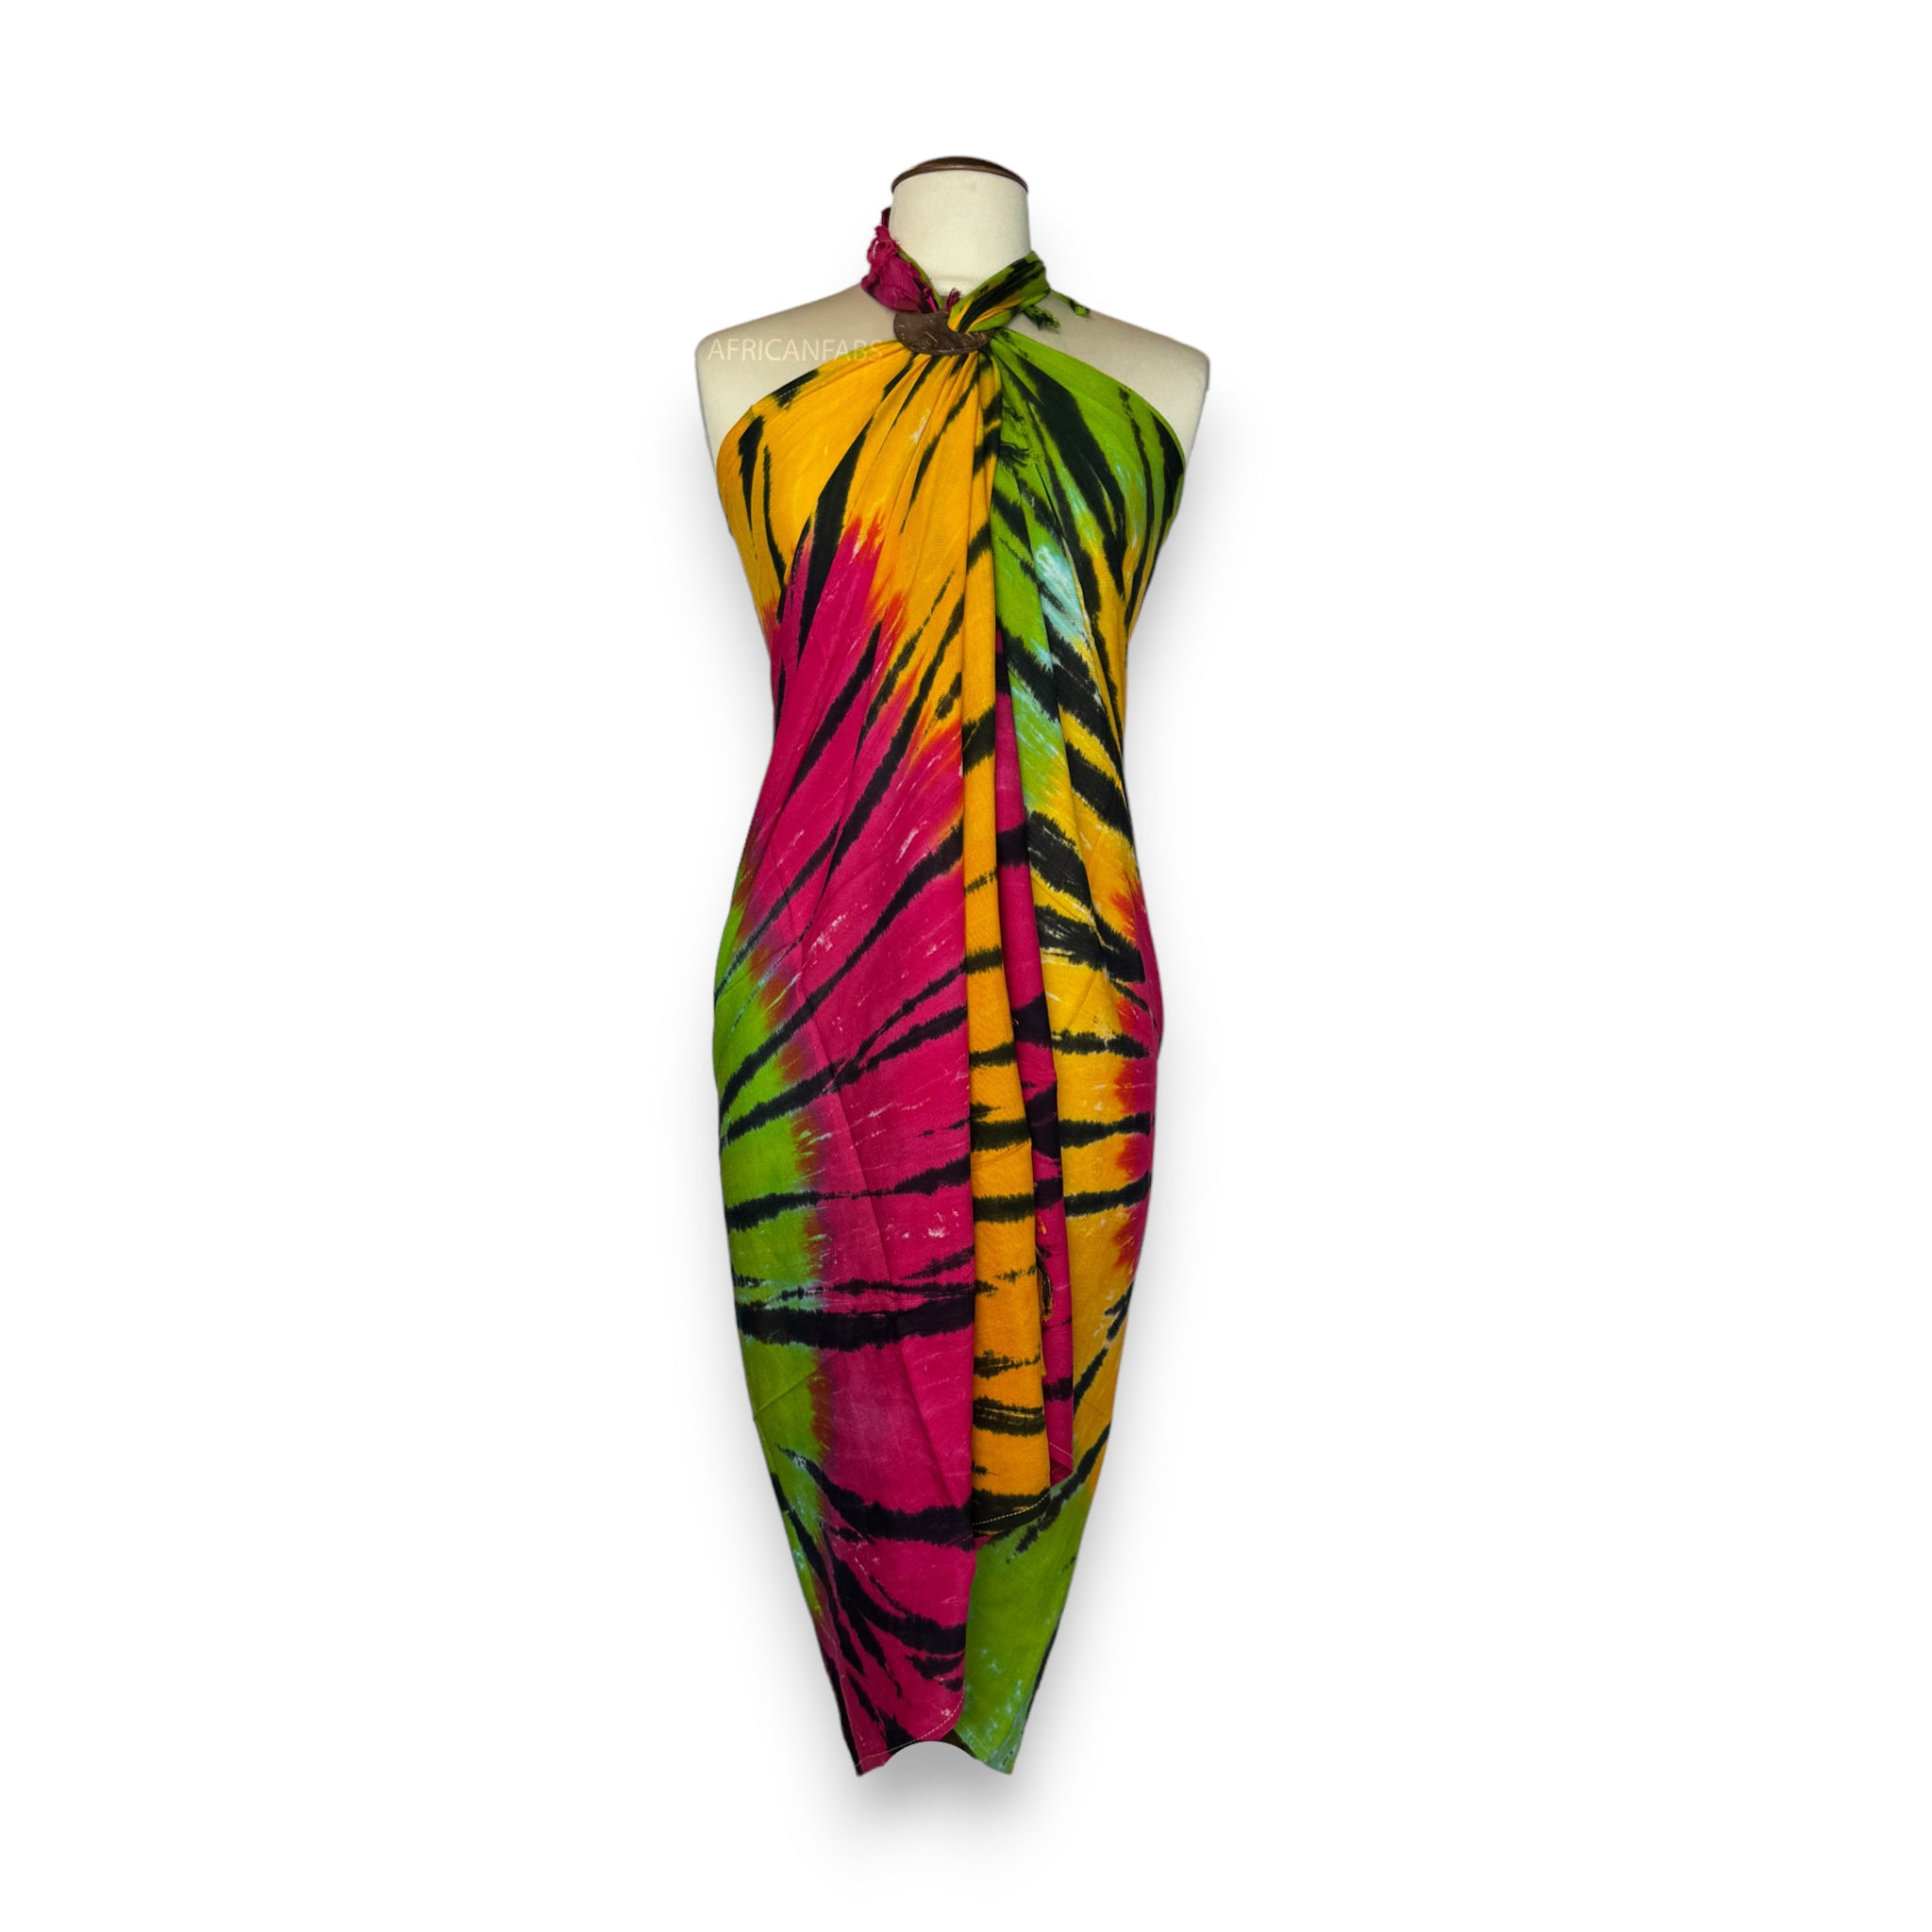 Pareo / Sarong - Falda envolvente de playa - Tie dye Multicolores